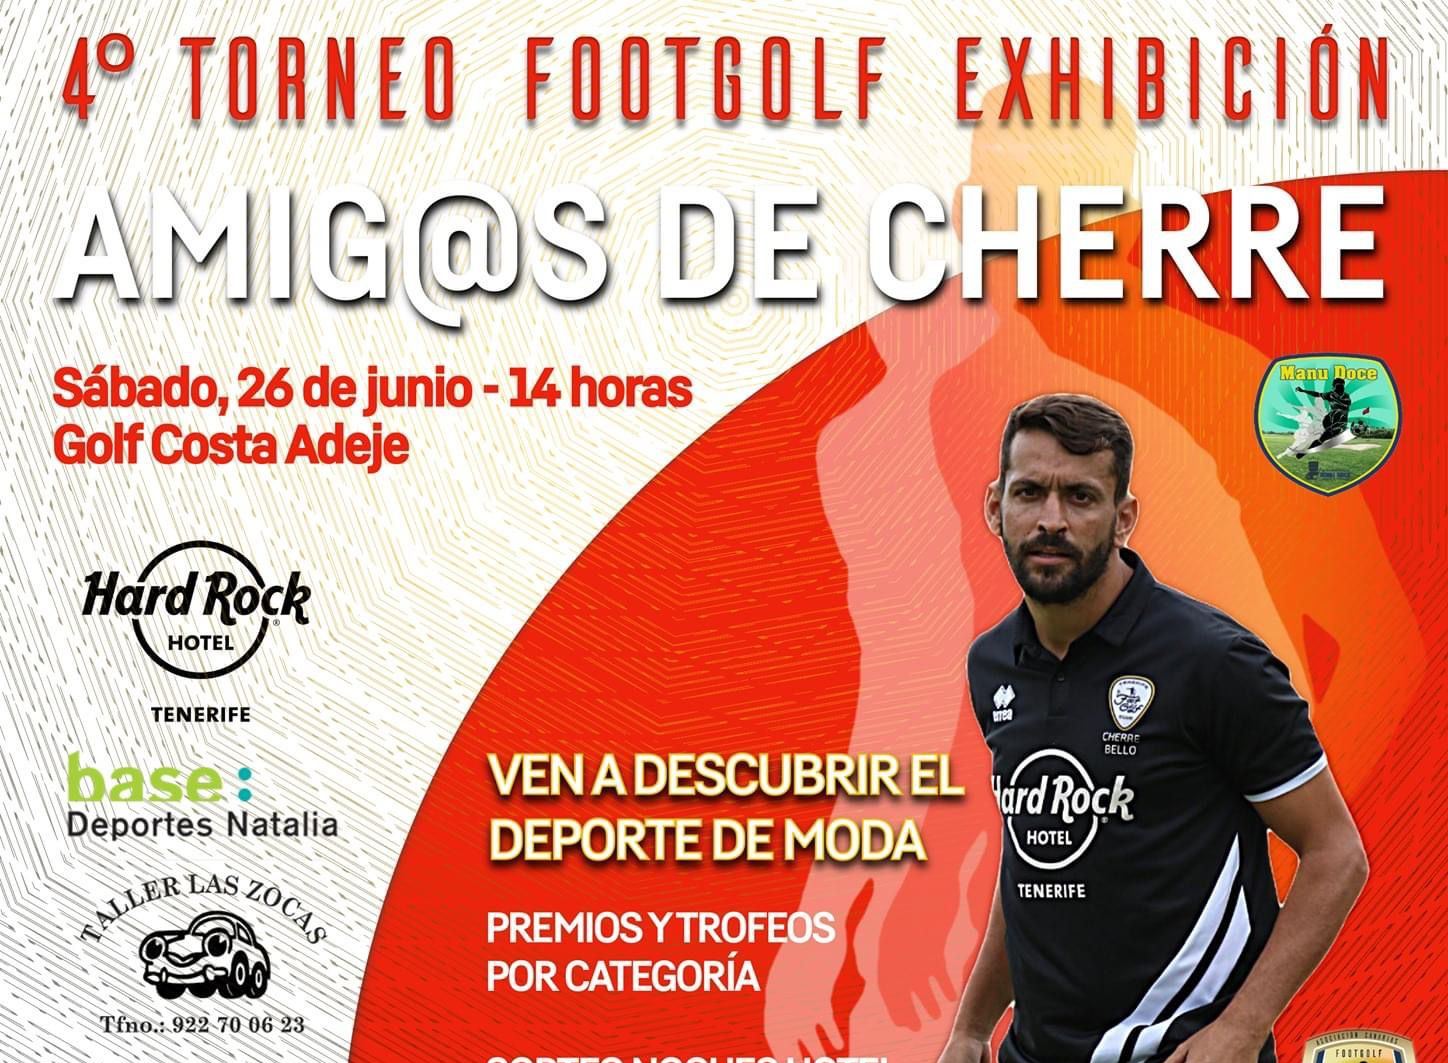 Este sábado se disputa el 4° Torneo exhibición de Footgolf "Amig@s de Cherre"